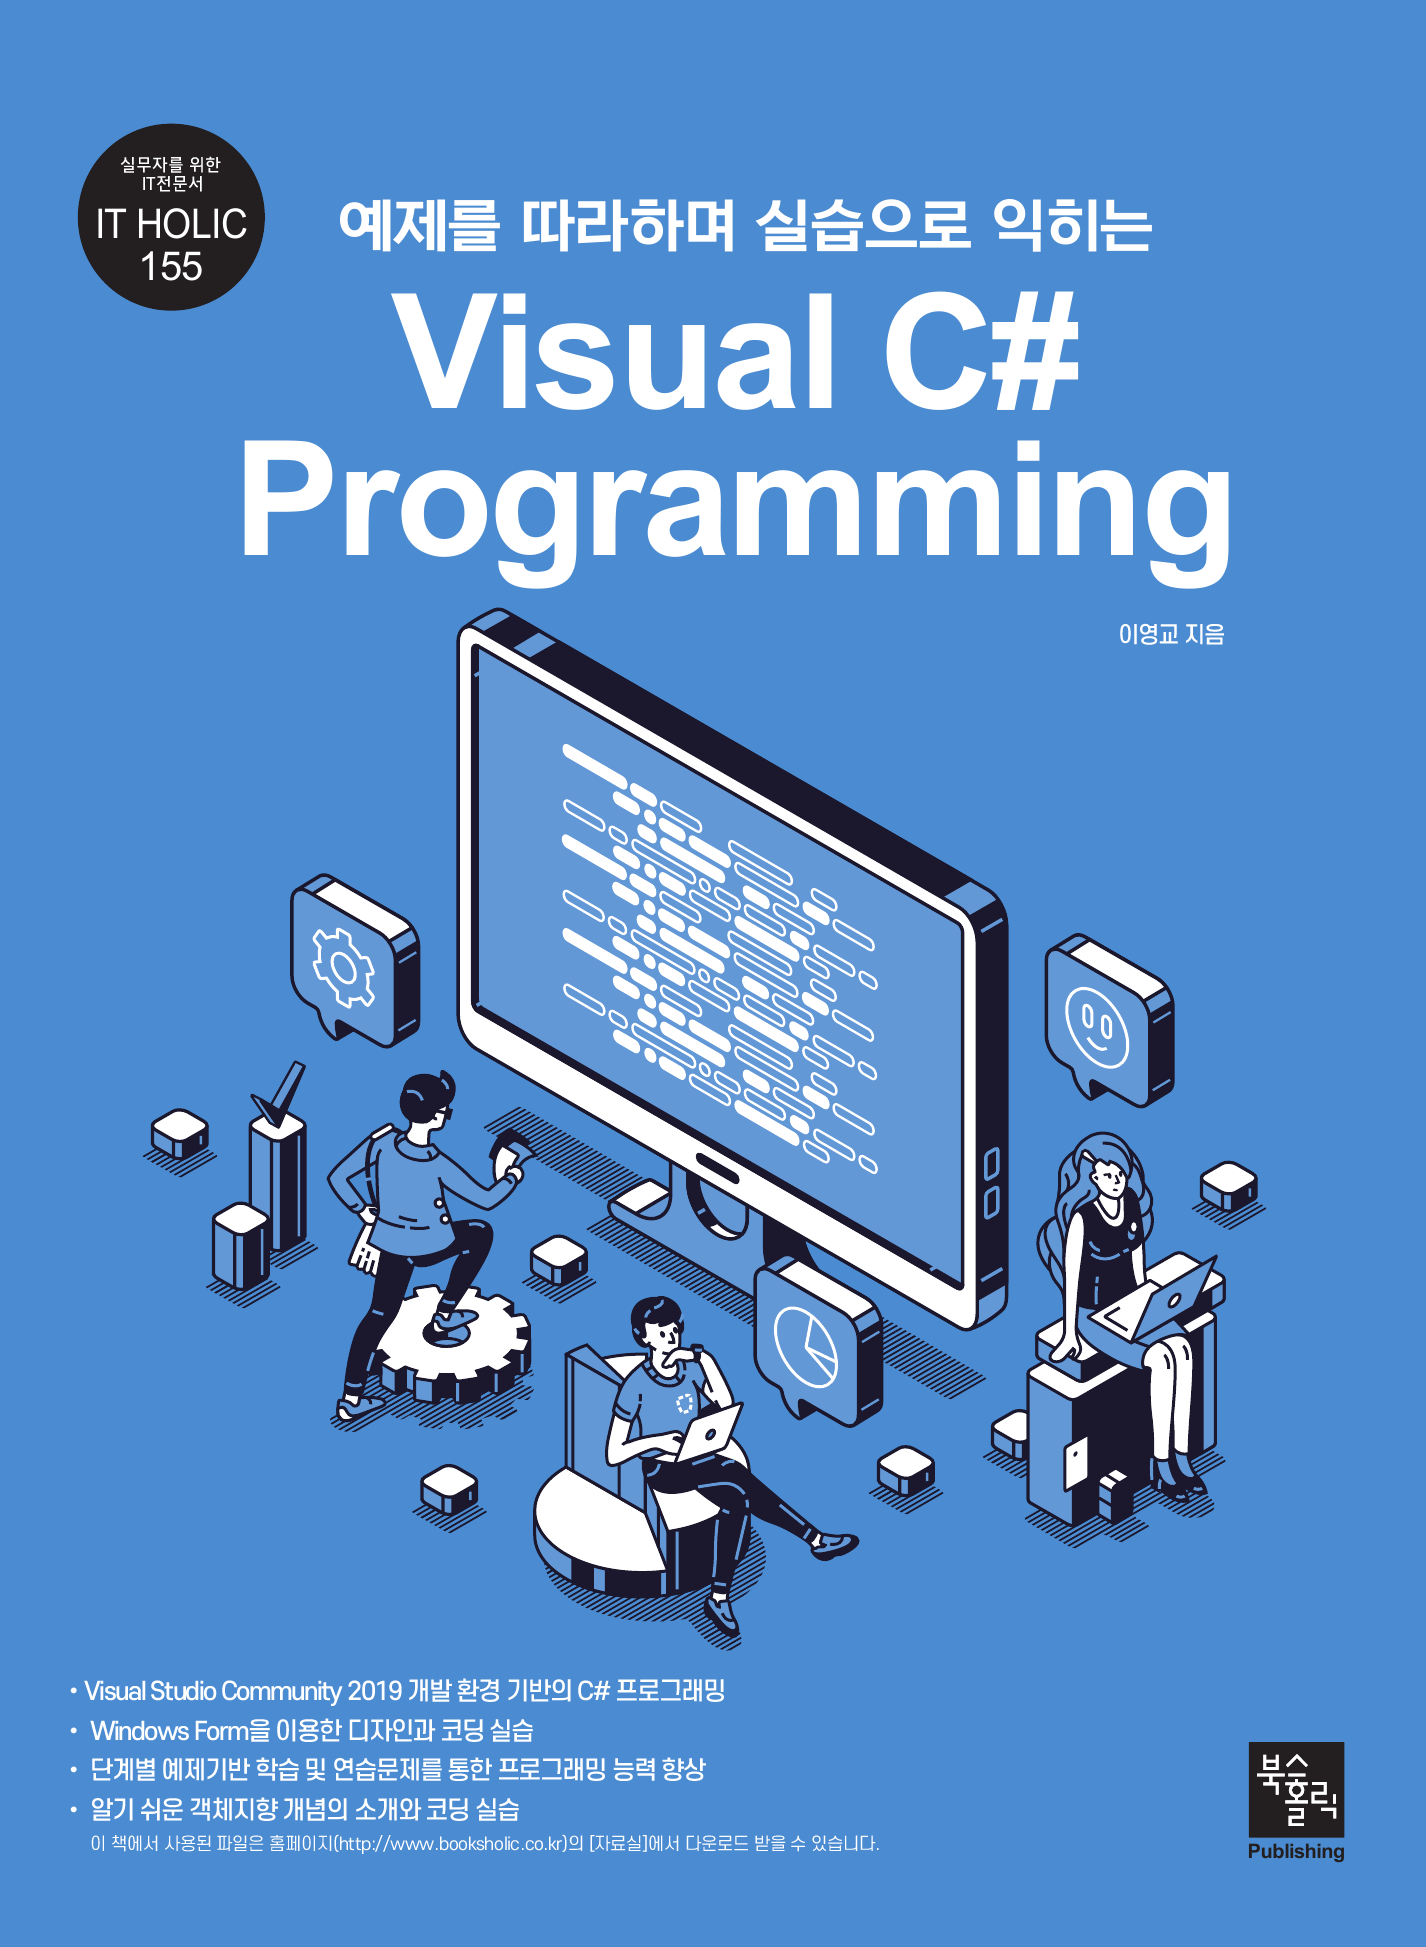 예제를 따라하며 실습으로 익히는 Visual C# Programming